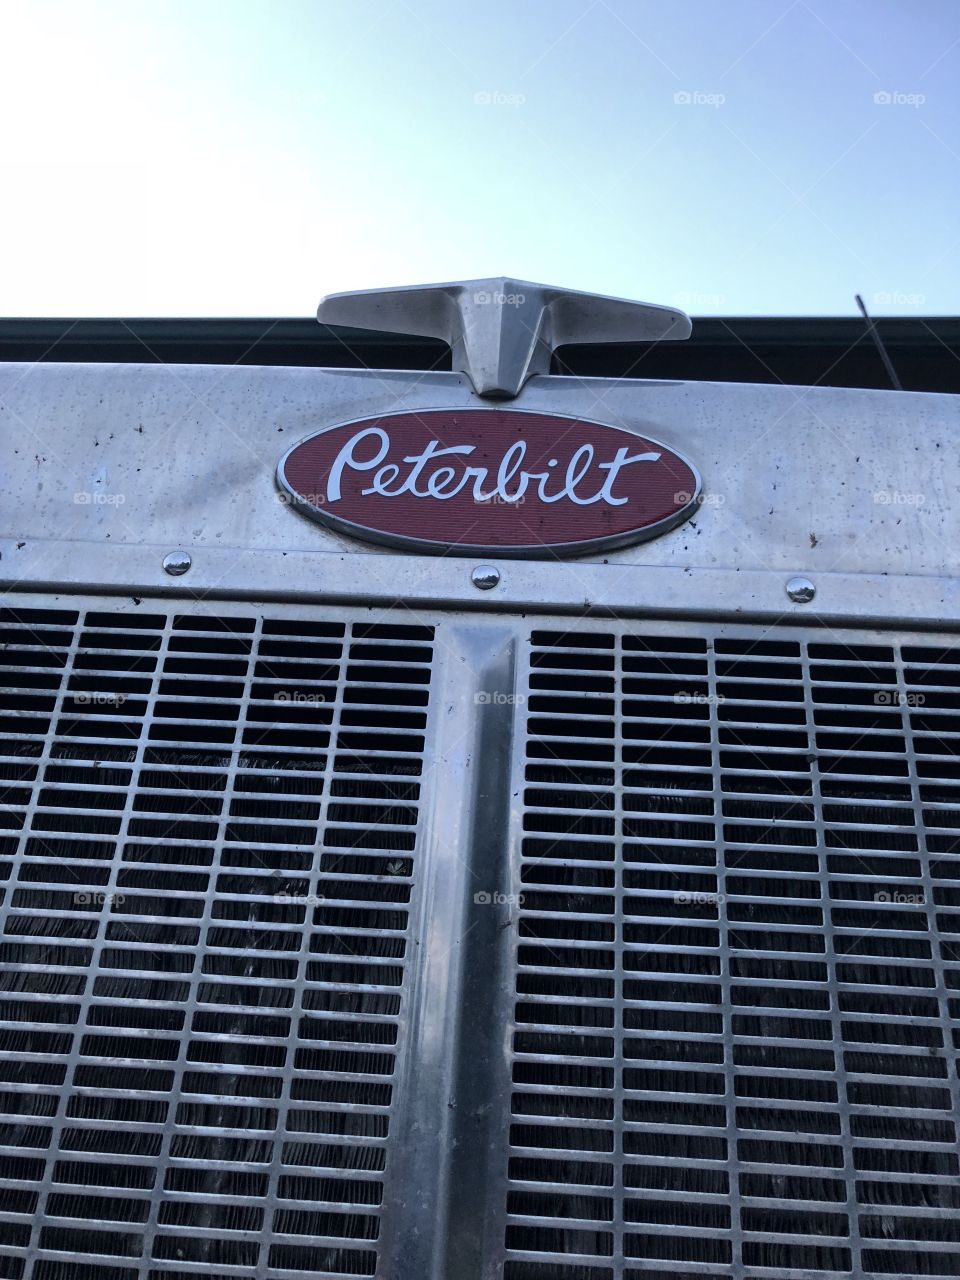 Peterbilt big rig grill 